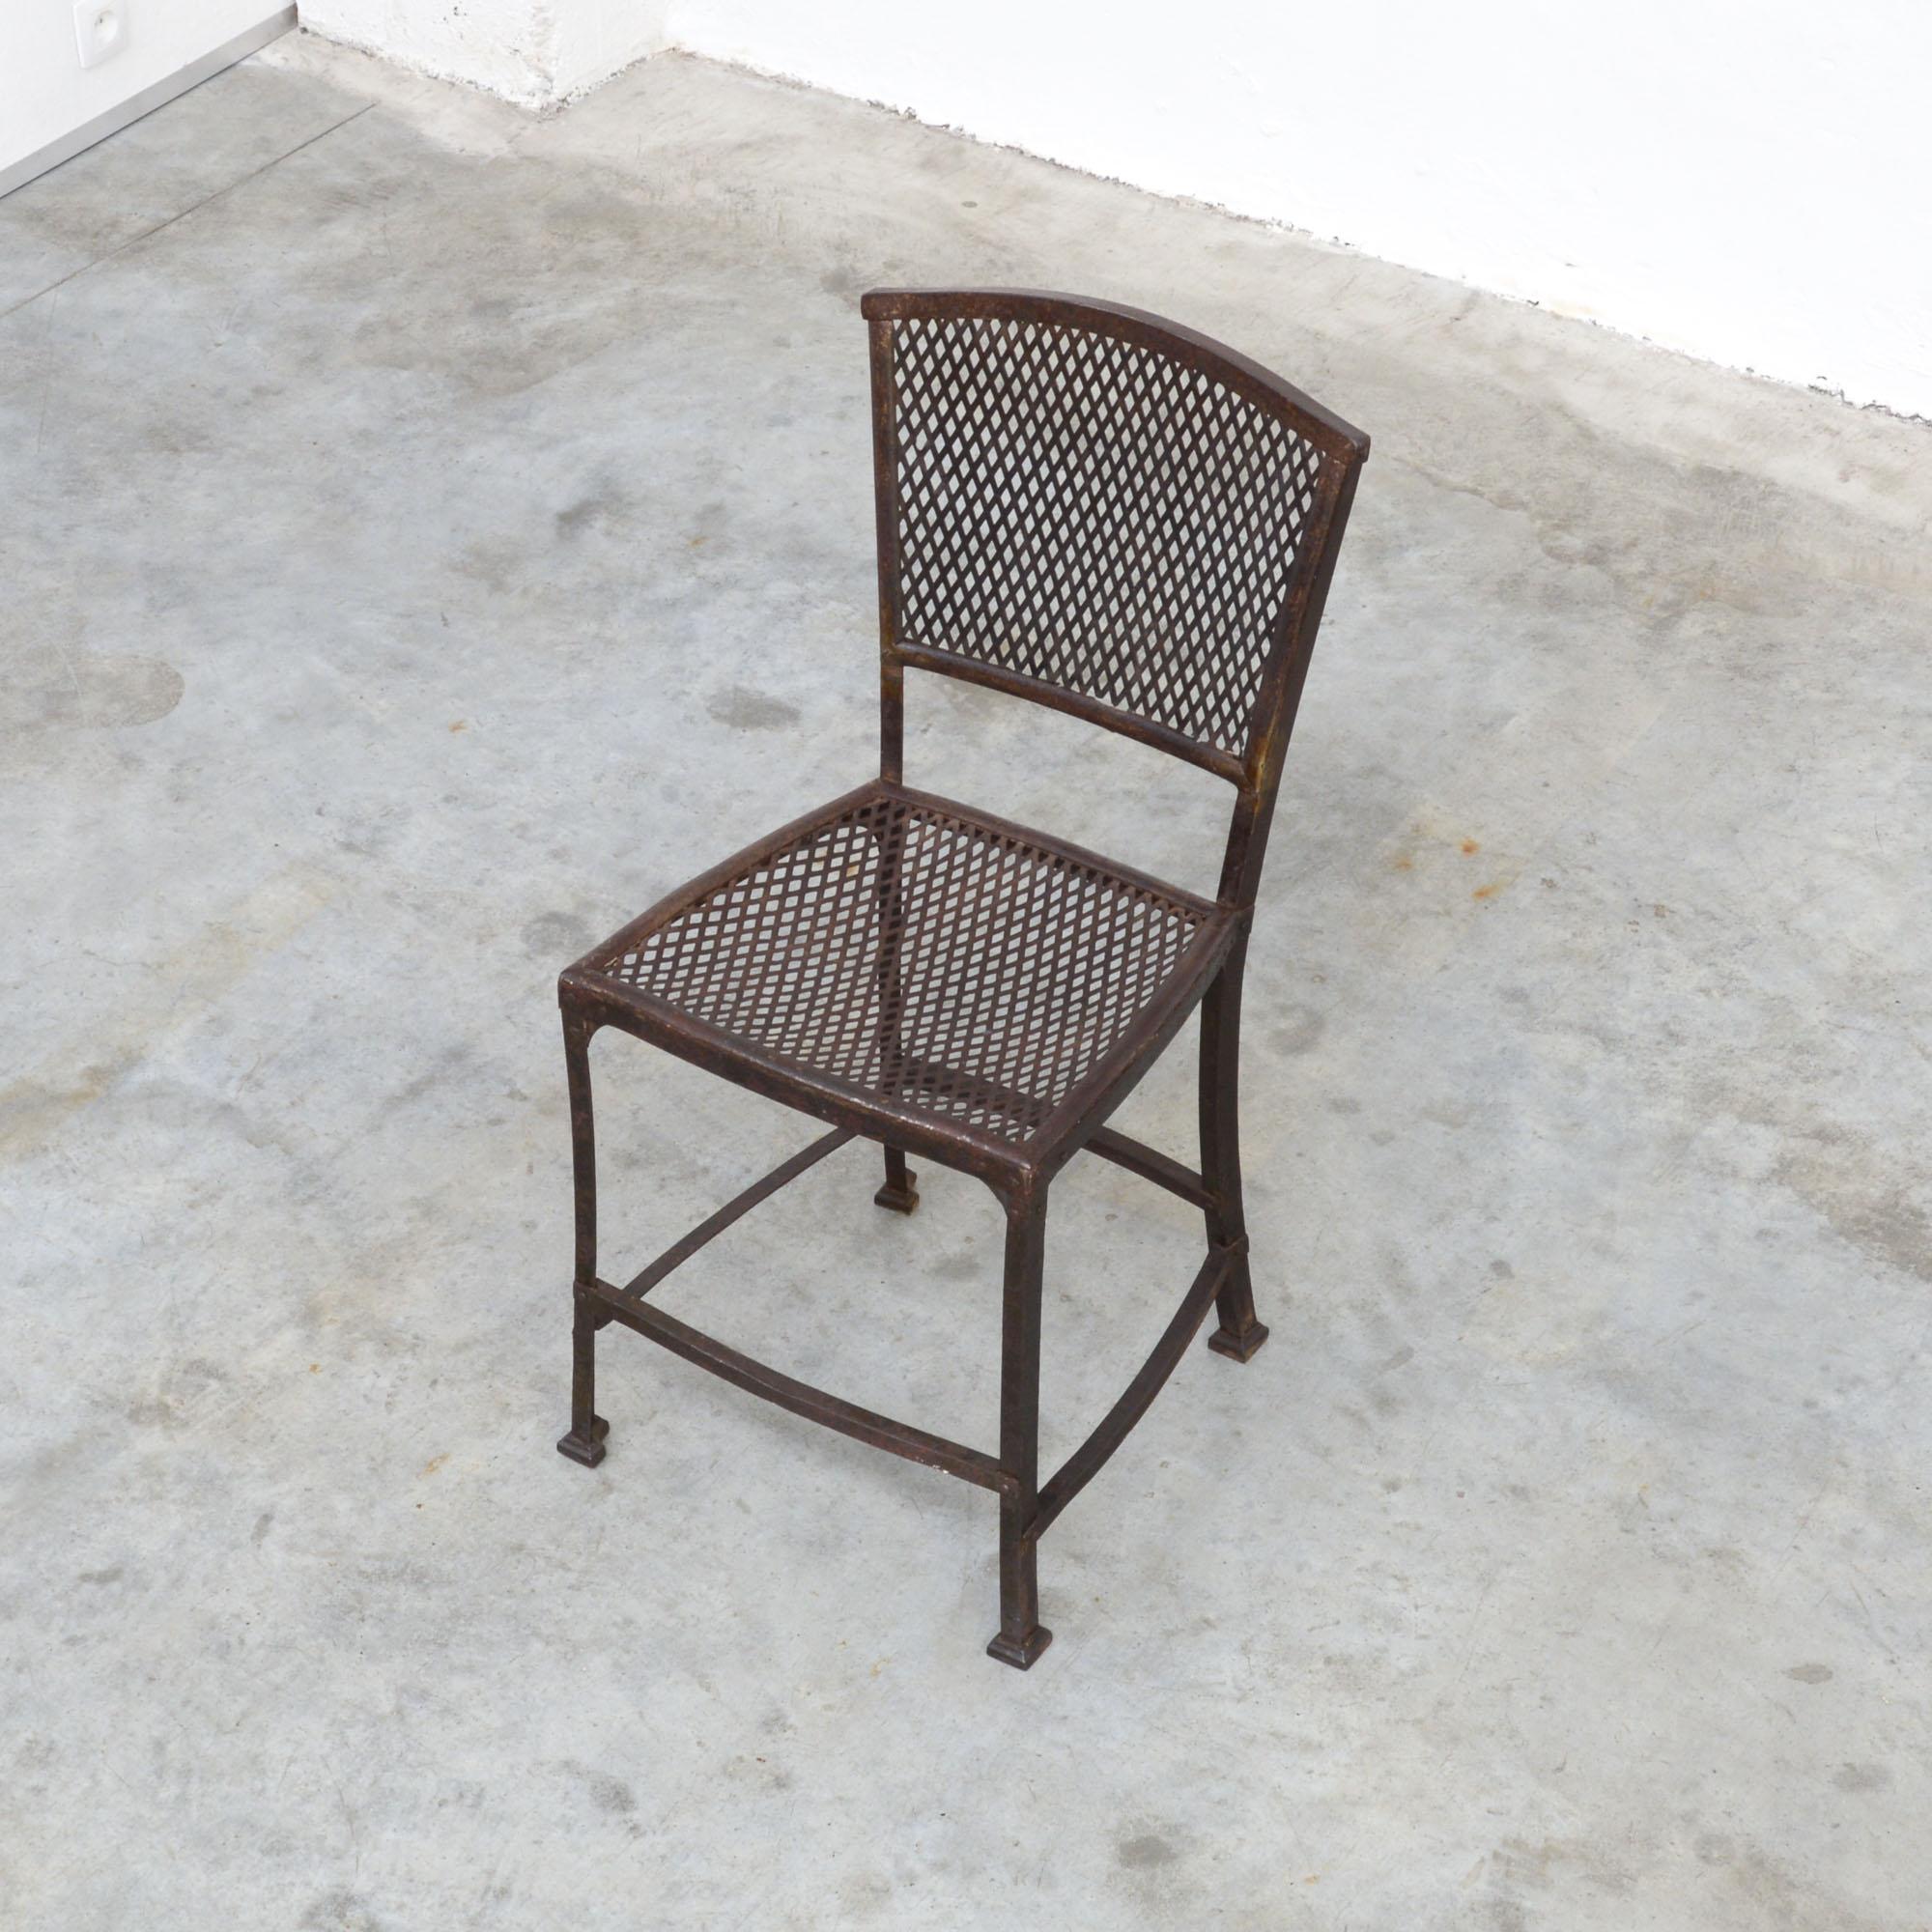 Cette chaise de jardin en fer a été conçue par l'architecte et designer de meubles belge Gustave Serrurier-Bovy pour Serrurier et Cie en 1903. Cette chaise est le seul 